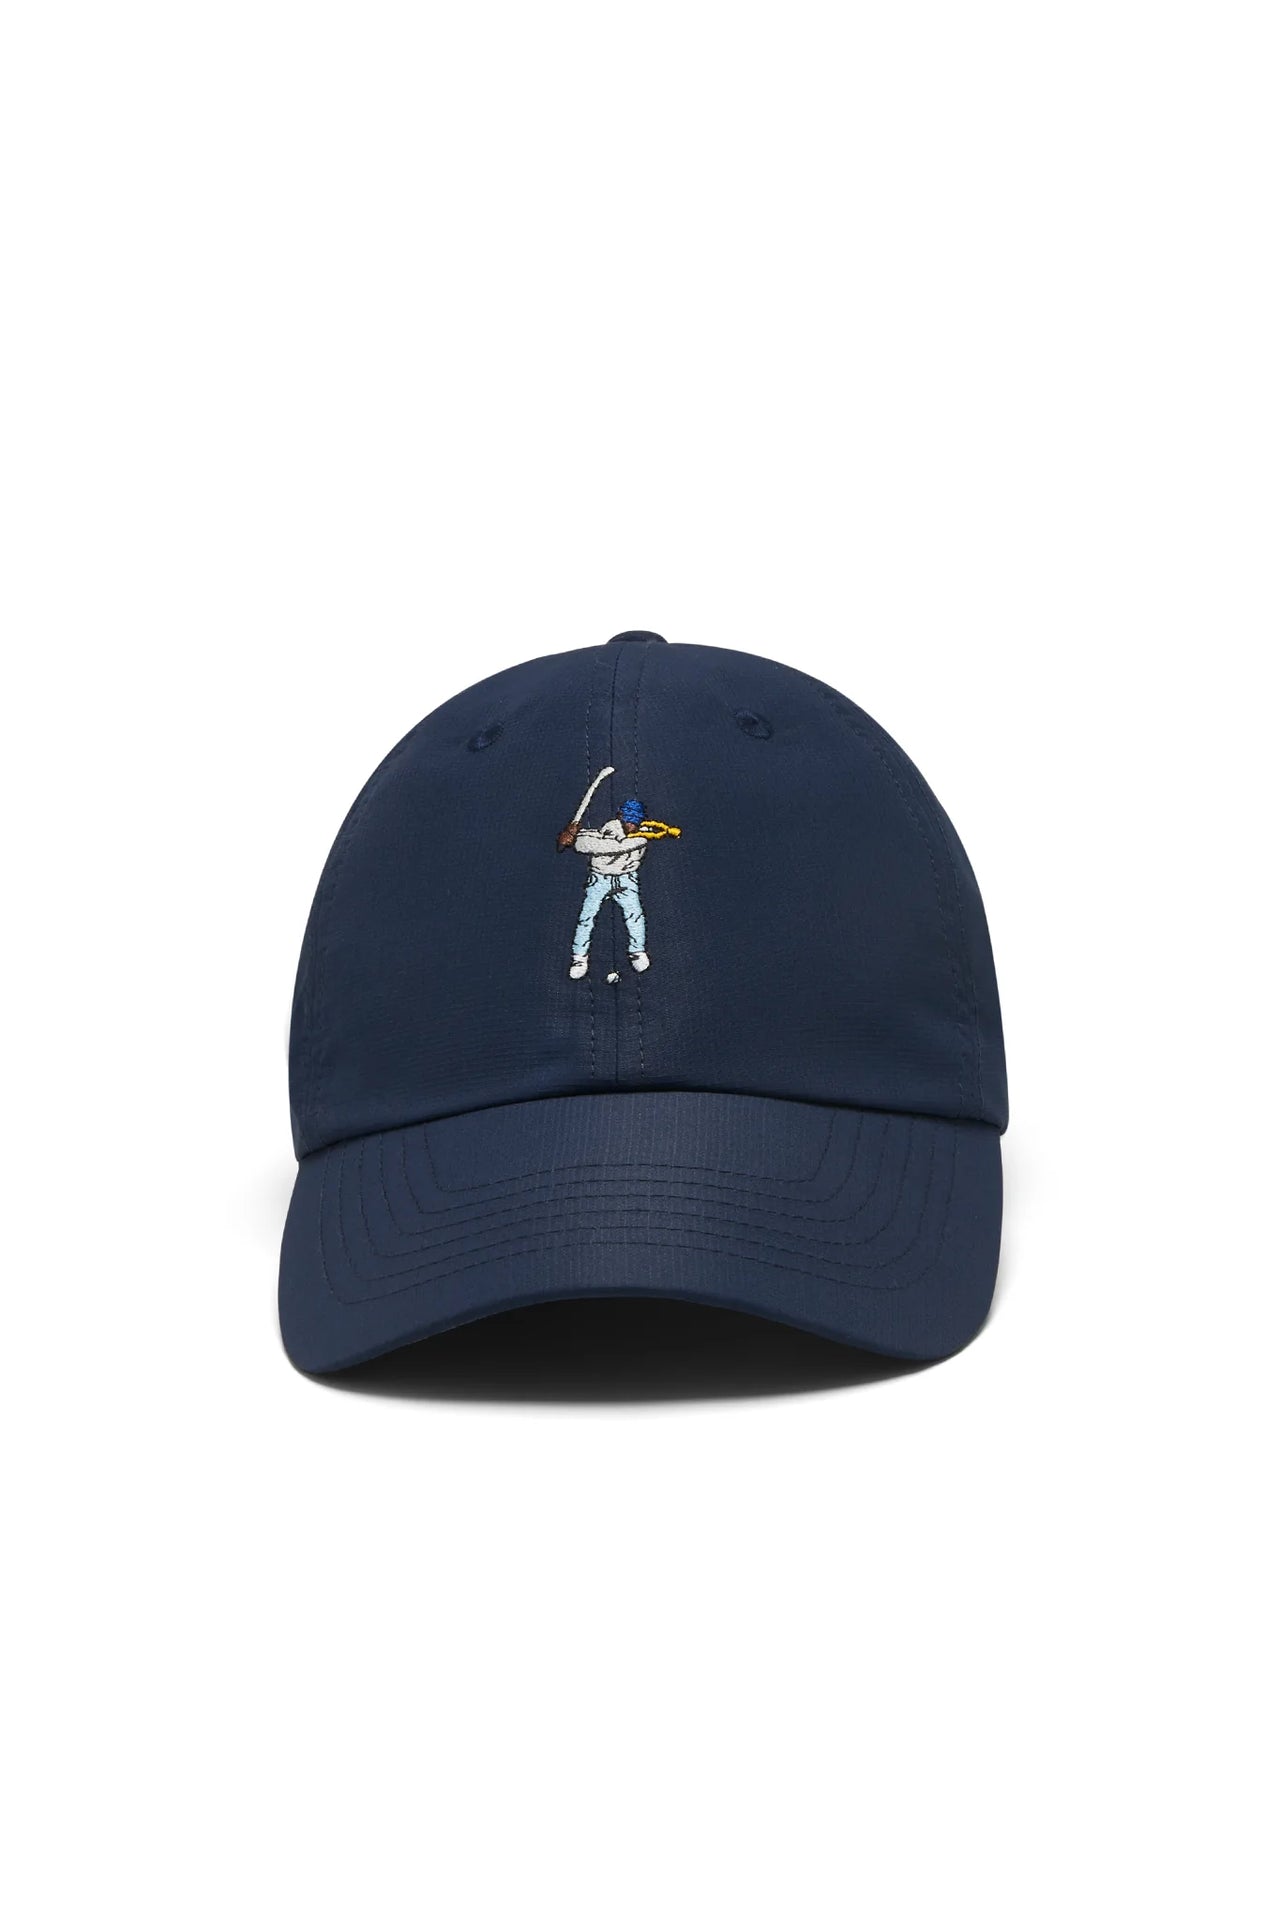 Eastside Golf Tournament Hat - Navy